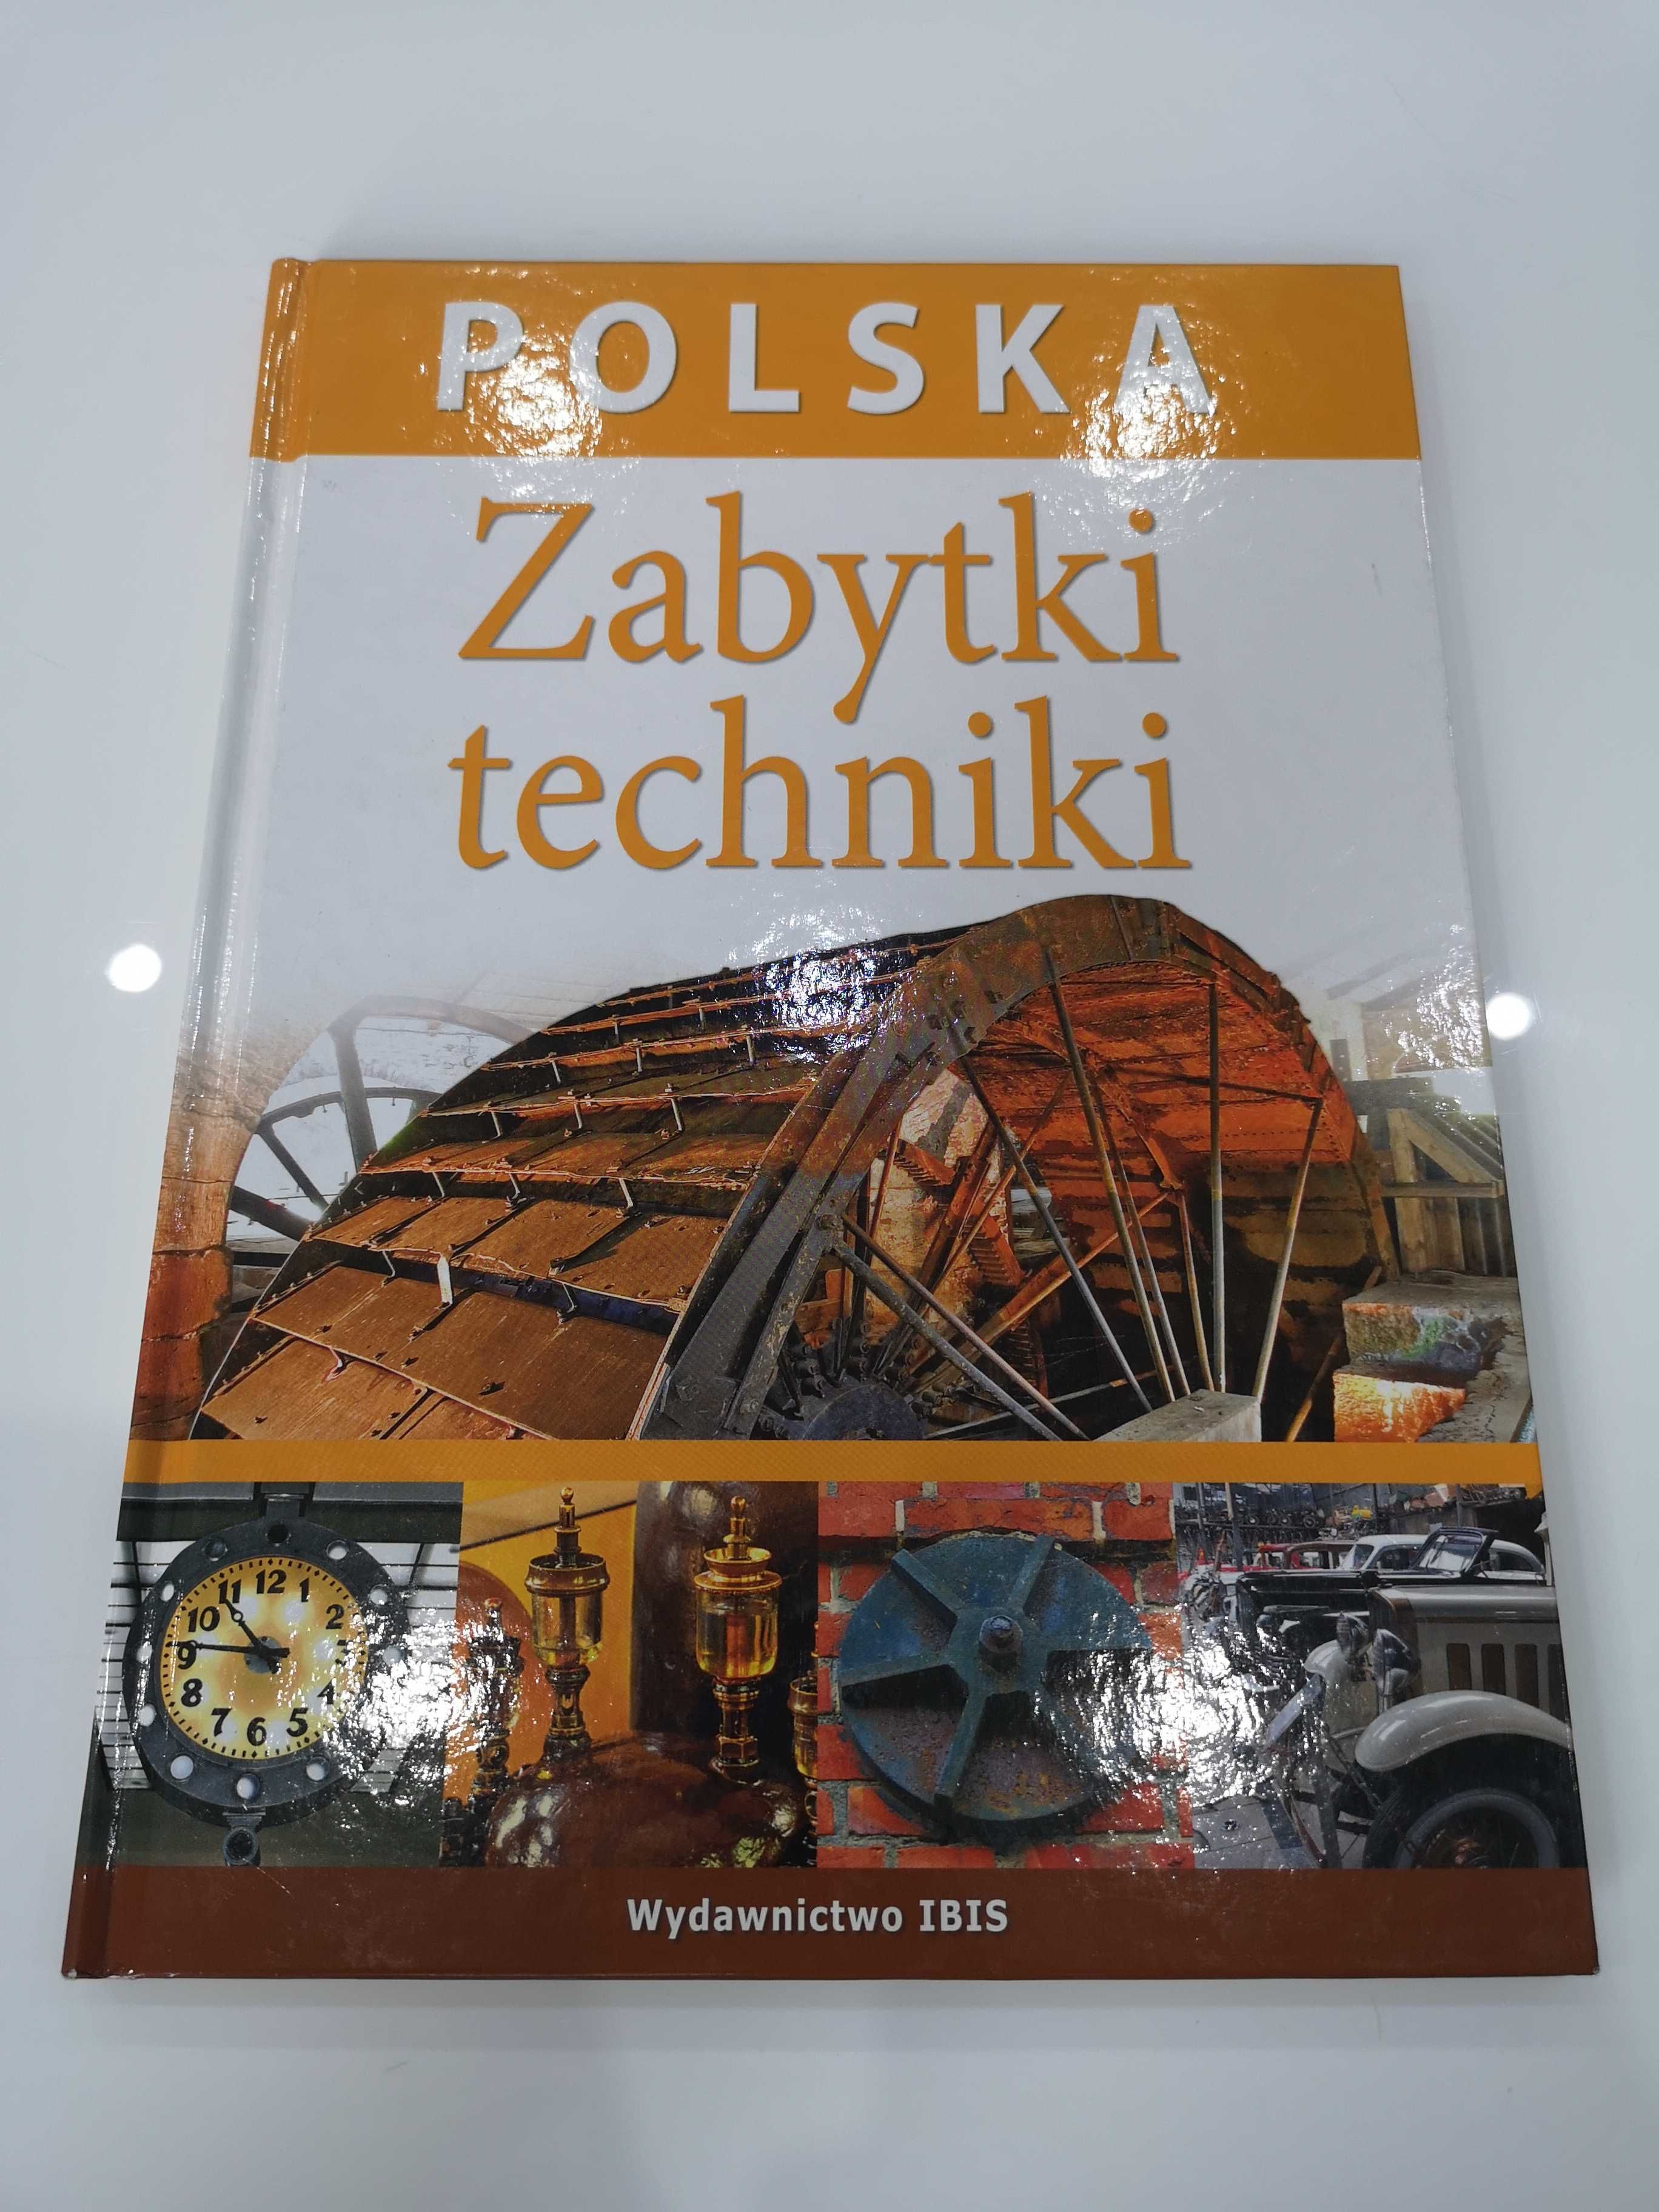 Zabytki techniki, Polska, wyd. IBIS, 2009r.